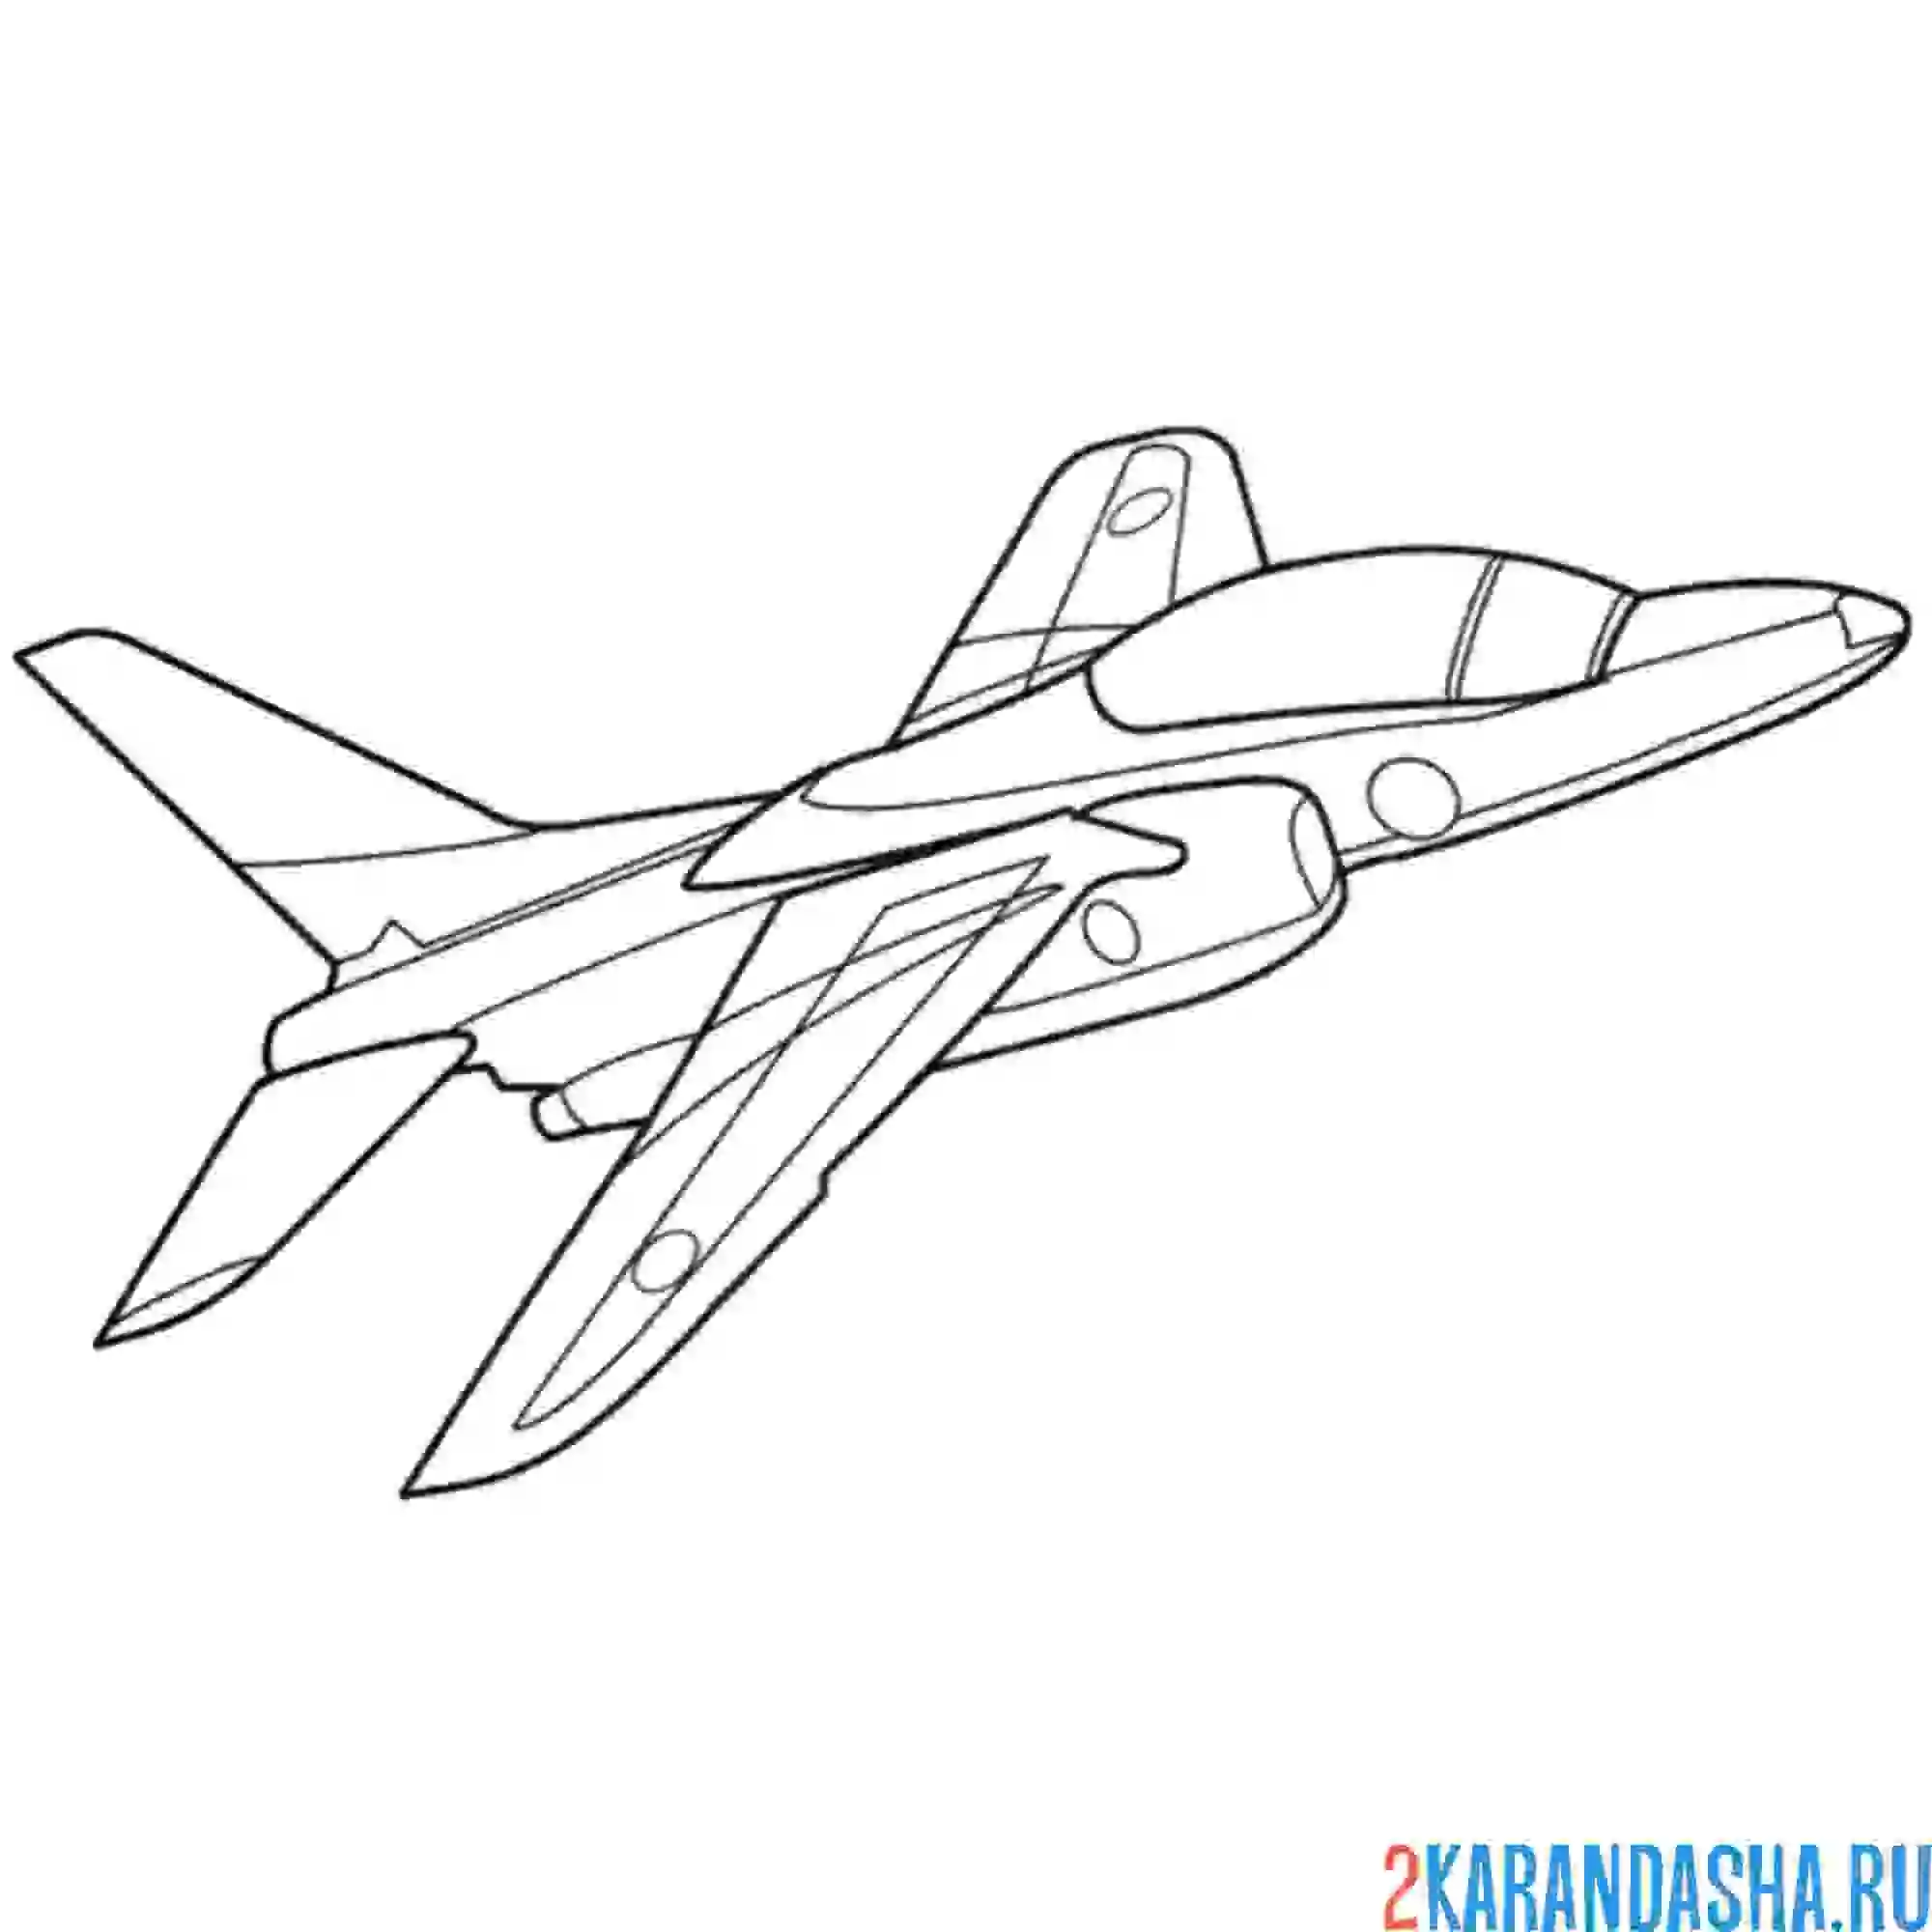 Раскраска т-4 (самолёт)  ударно-разведывательный бомбардировщик-ракетоносец окб сухого